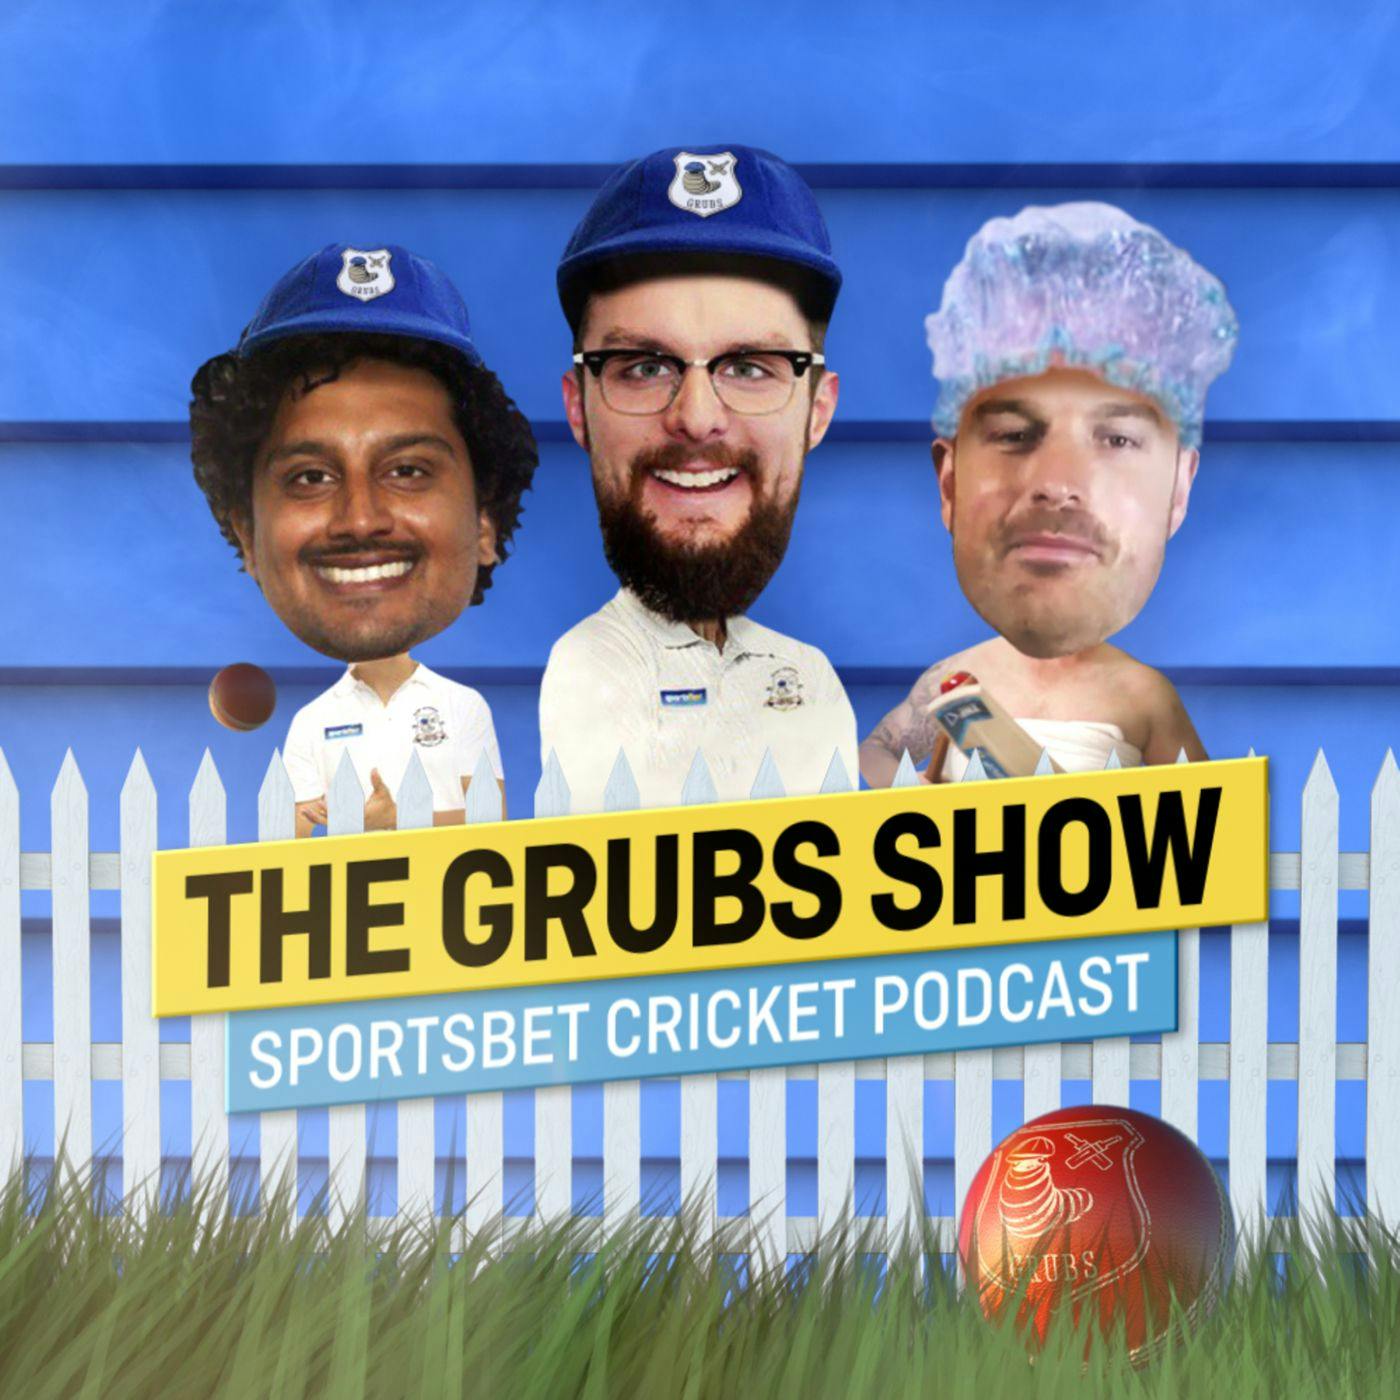 The Grubs Show - S4 E9 - Merry Grubmas